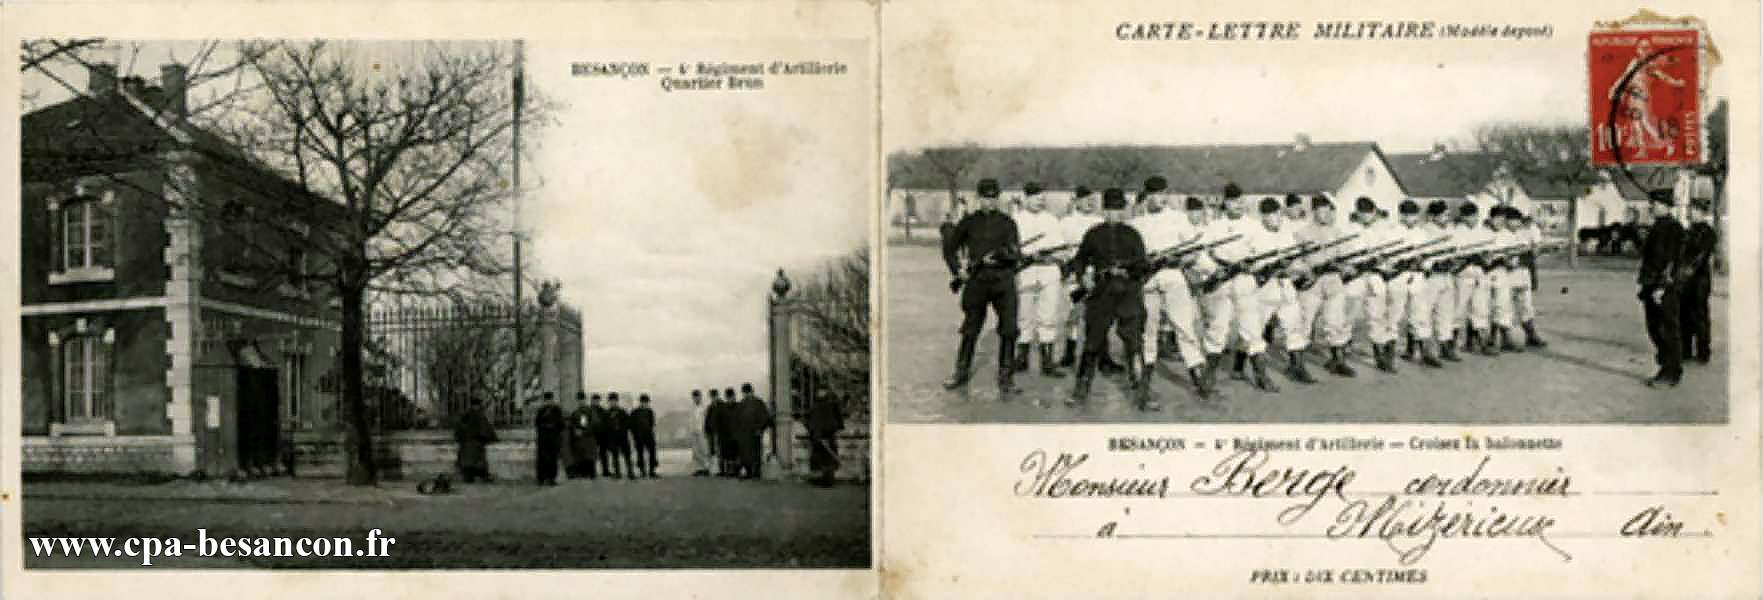 CARTE-LETTRE MILITAIRE - BESANÇON - 4e Régiment d'Artillerie Quartier Brun & BESANÇON - 4e Régiment d'Artillerie - Croisez la baïonnette